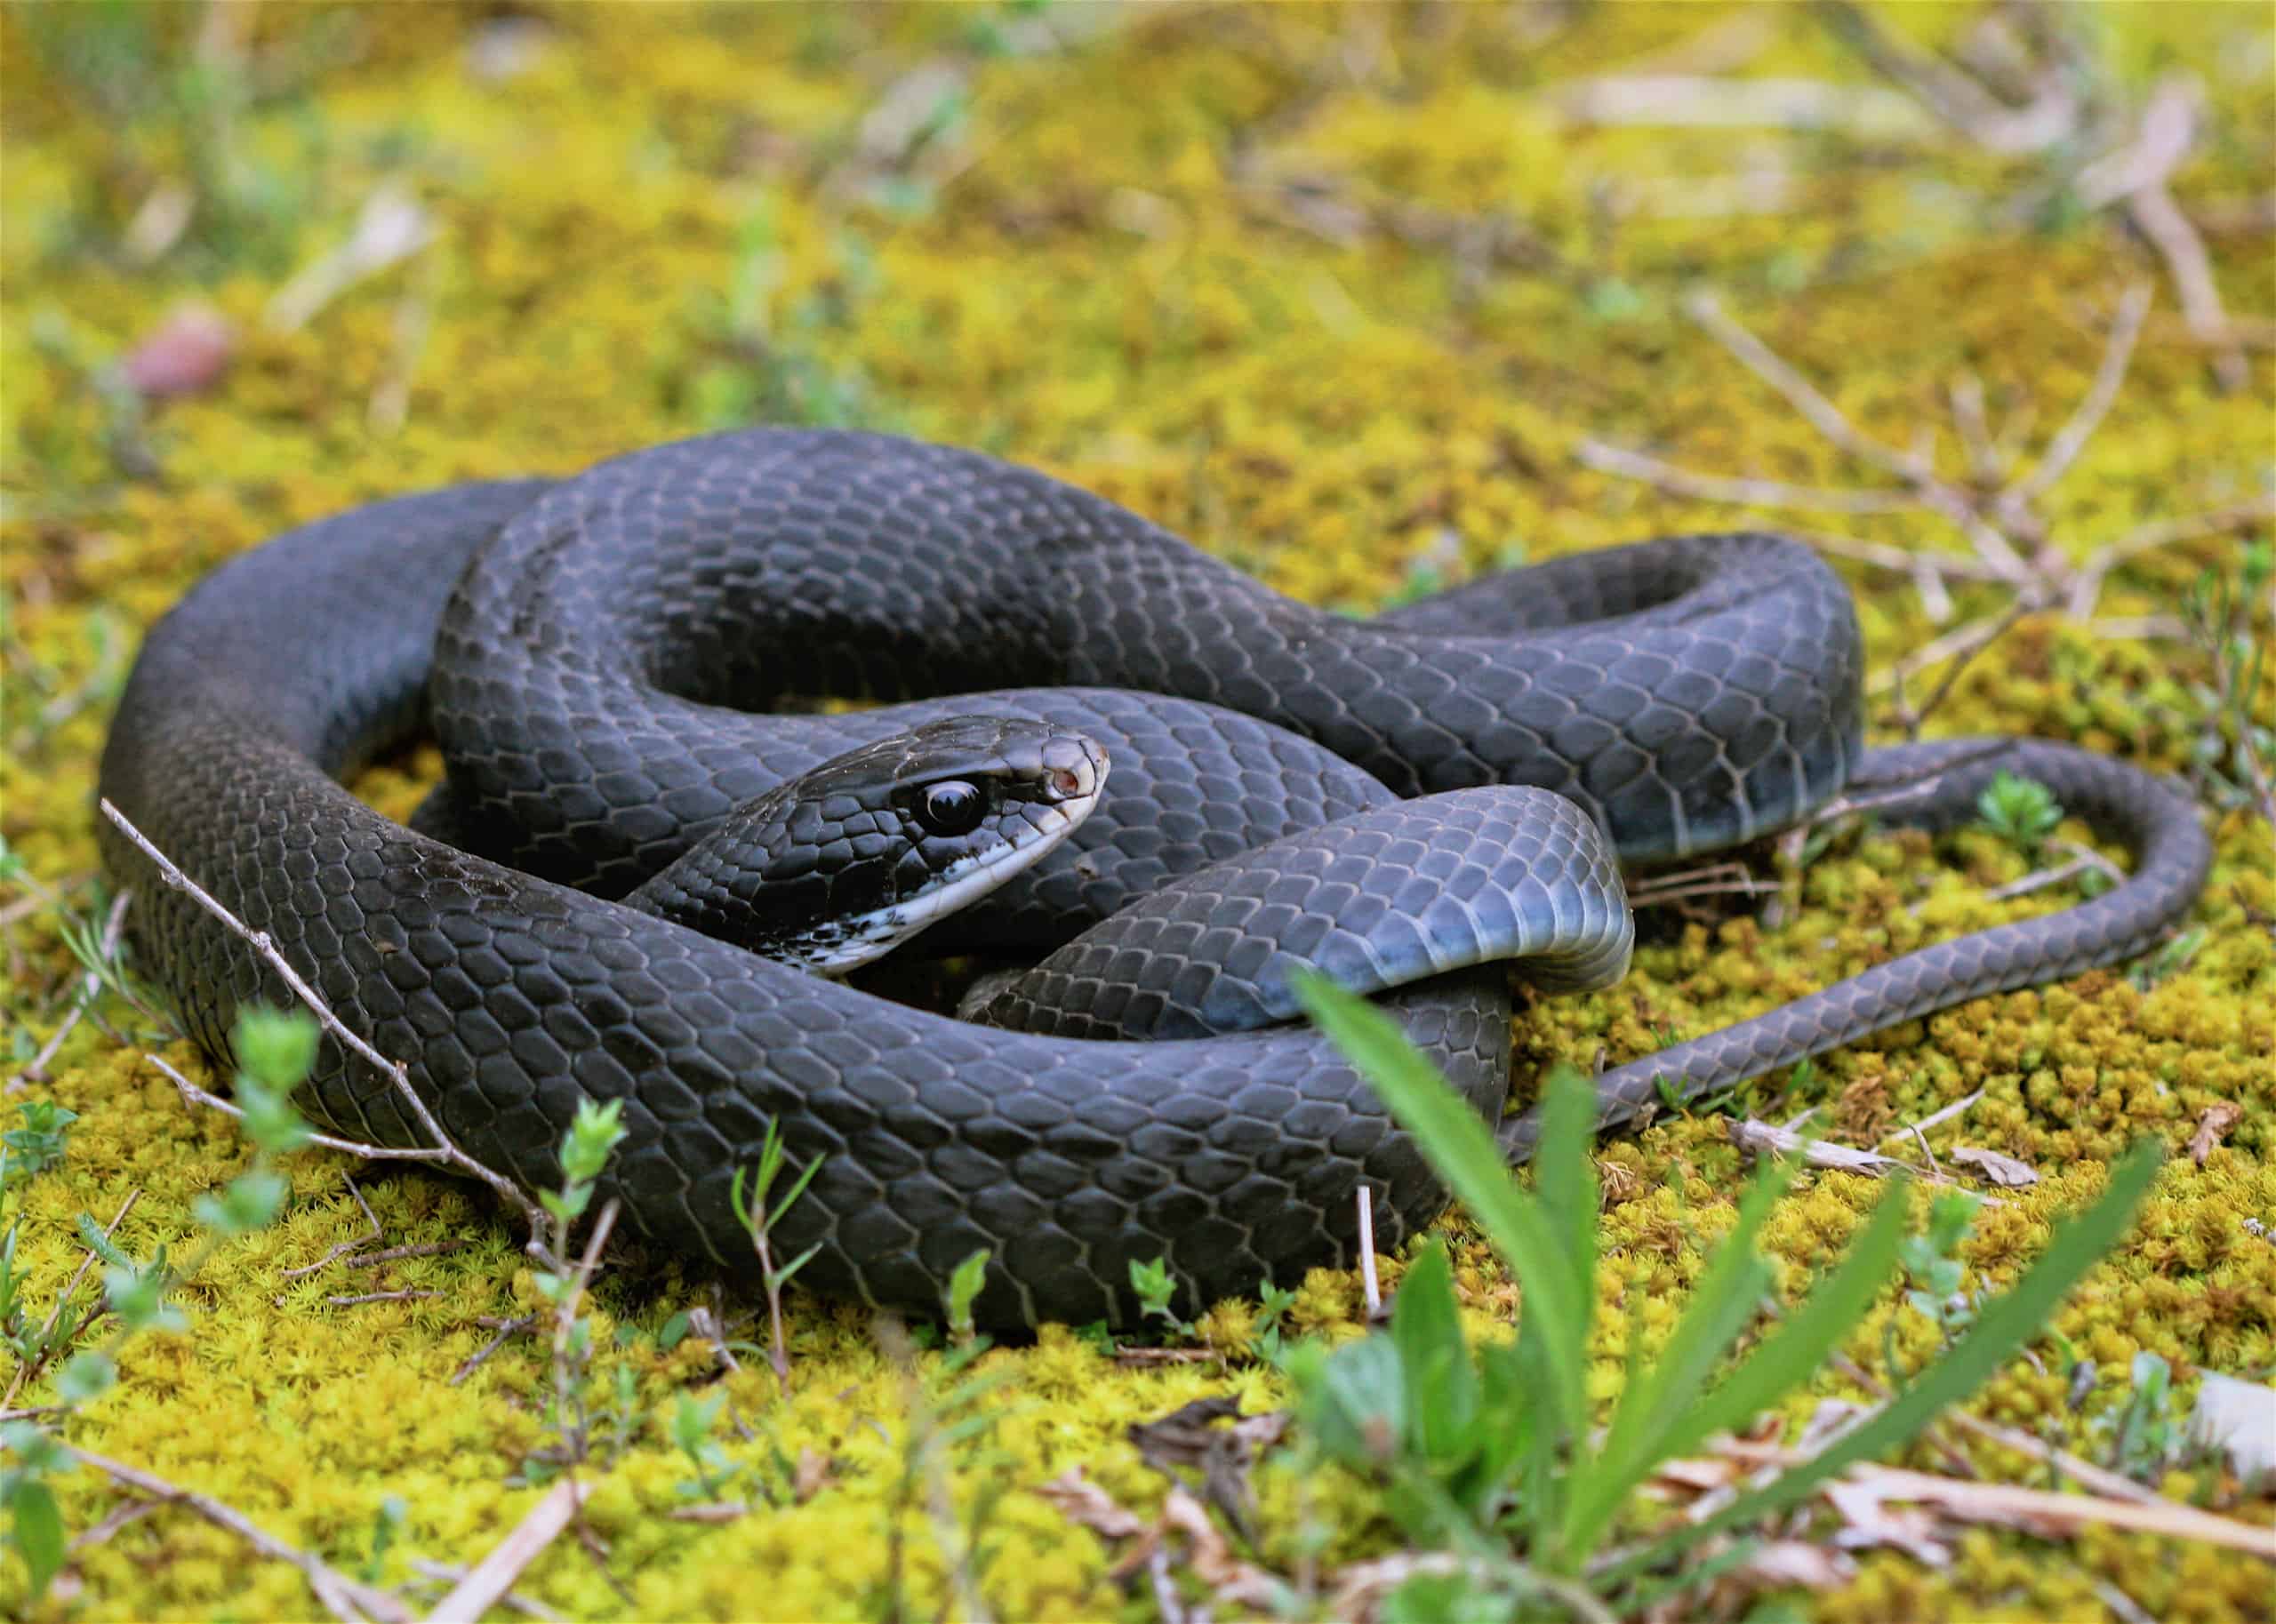 Black racer snake in Wilson County